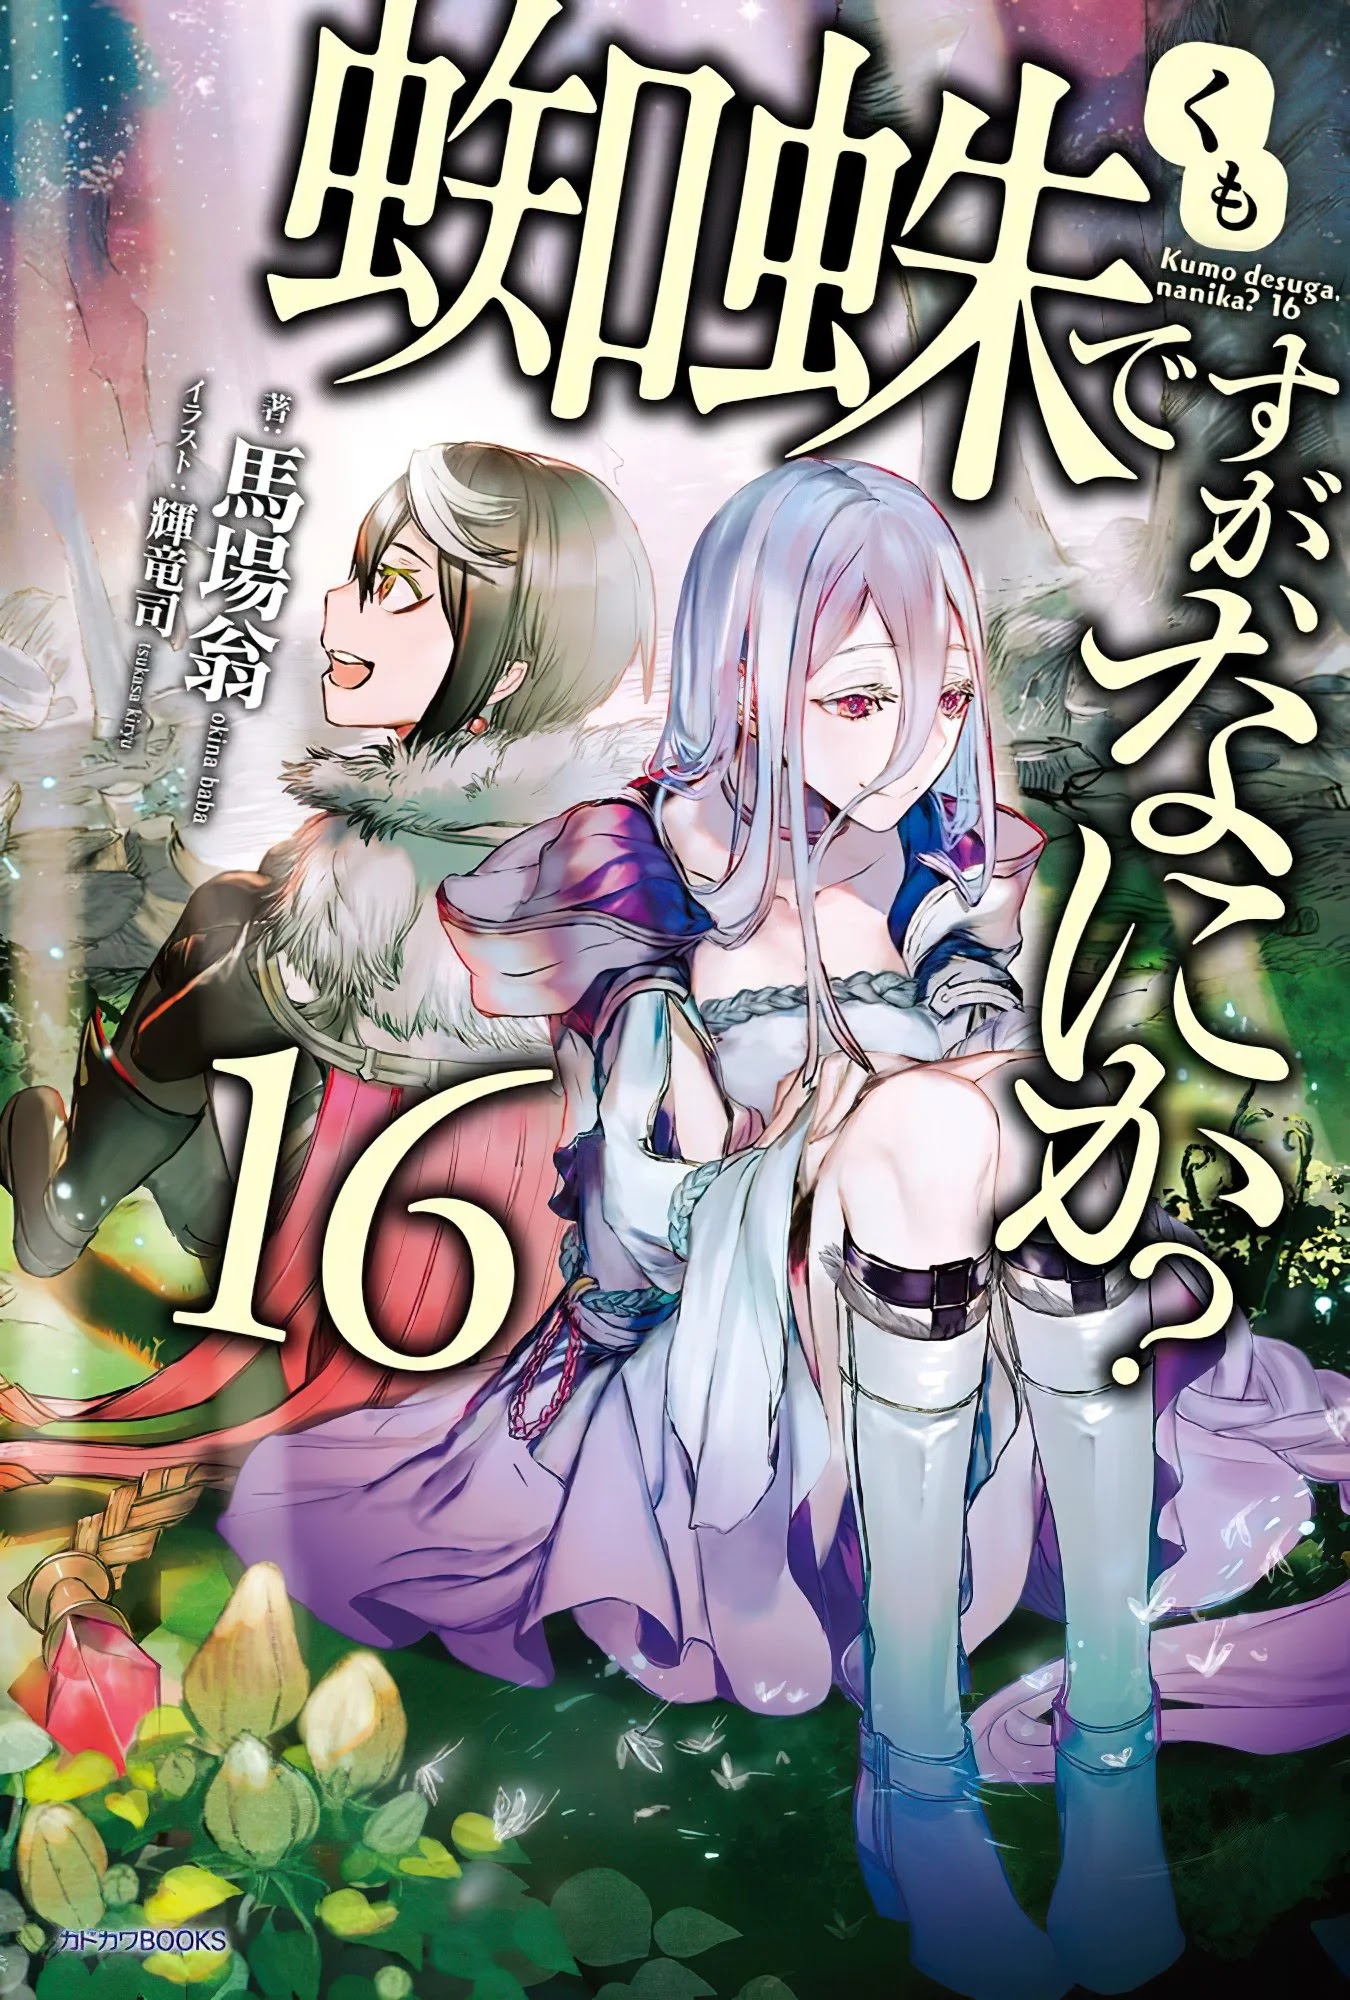 A Light Novel Kumo Desu ga, Nani ka? Terminará em Janeiro de 2022